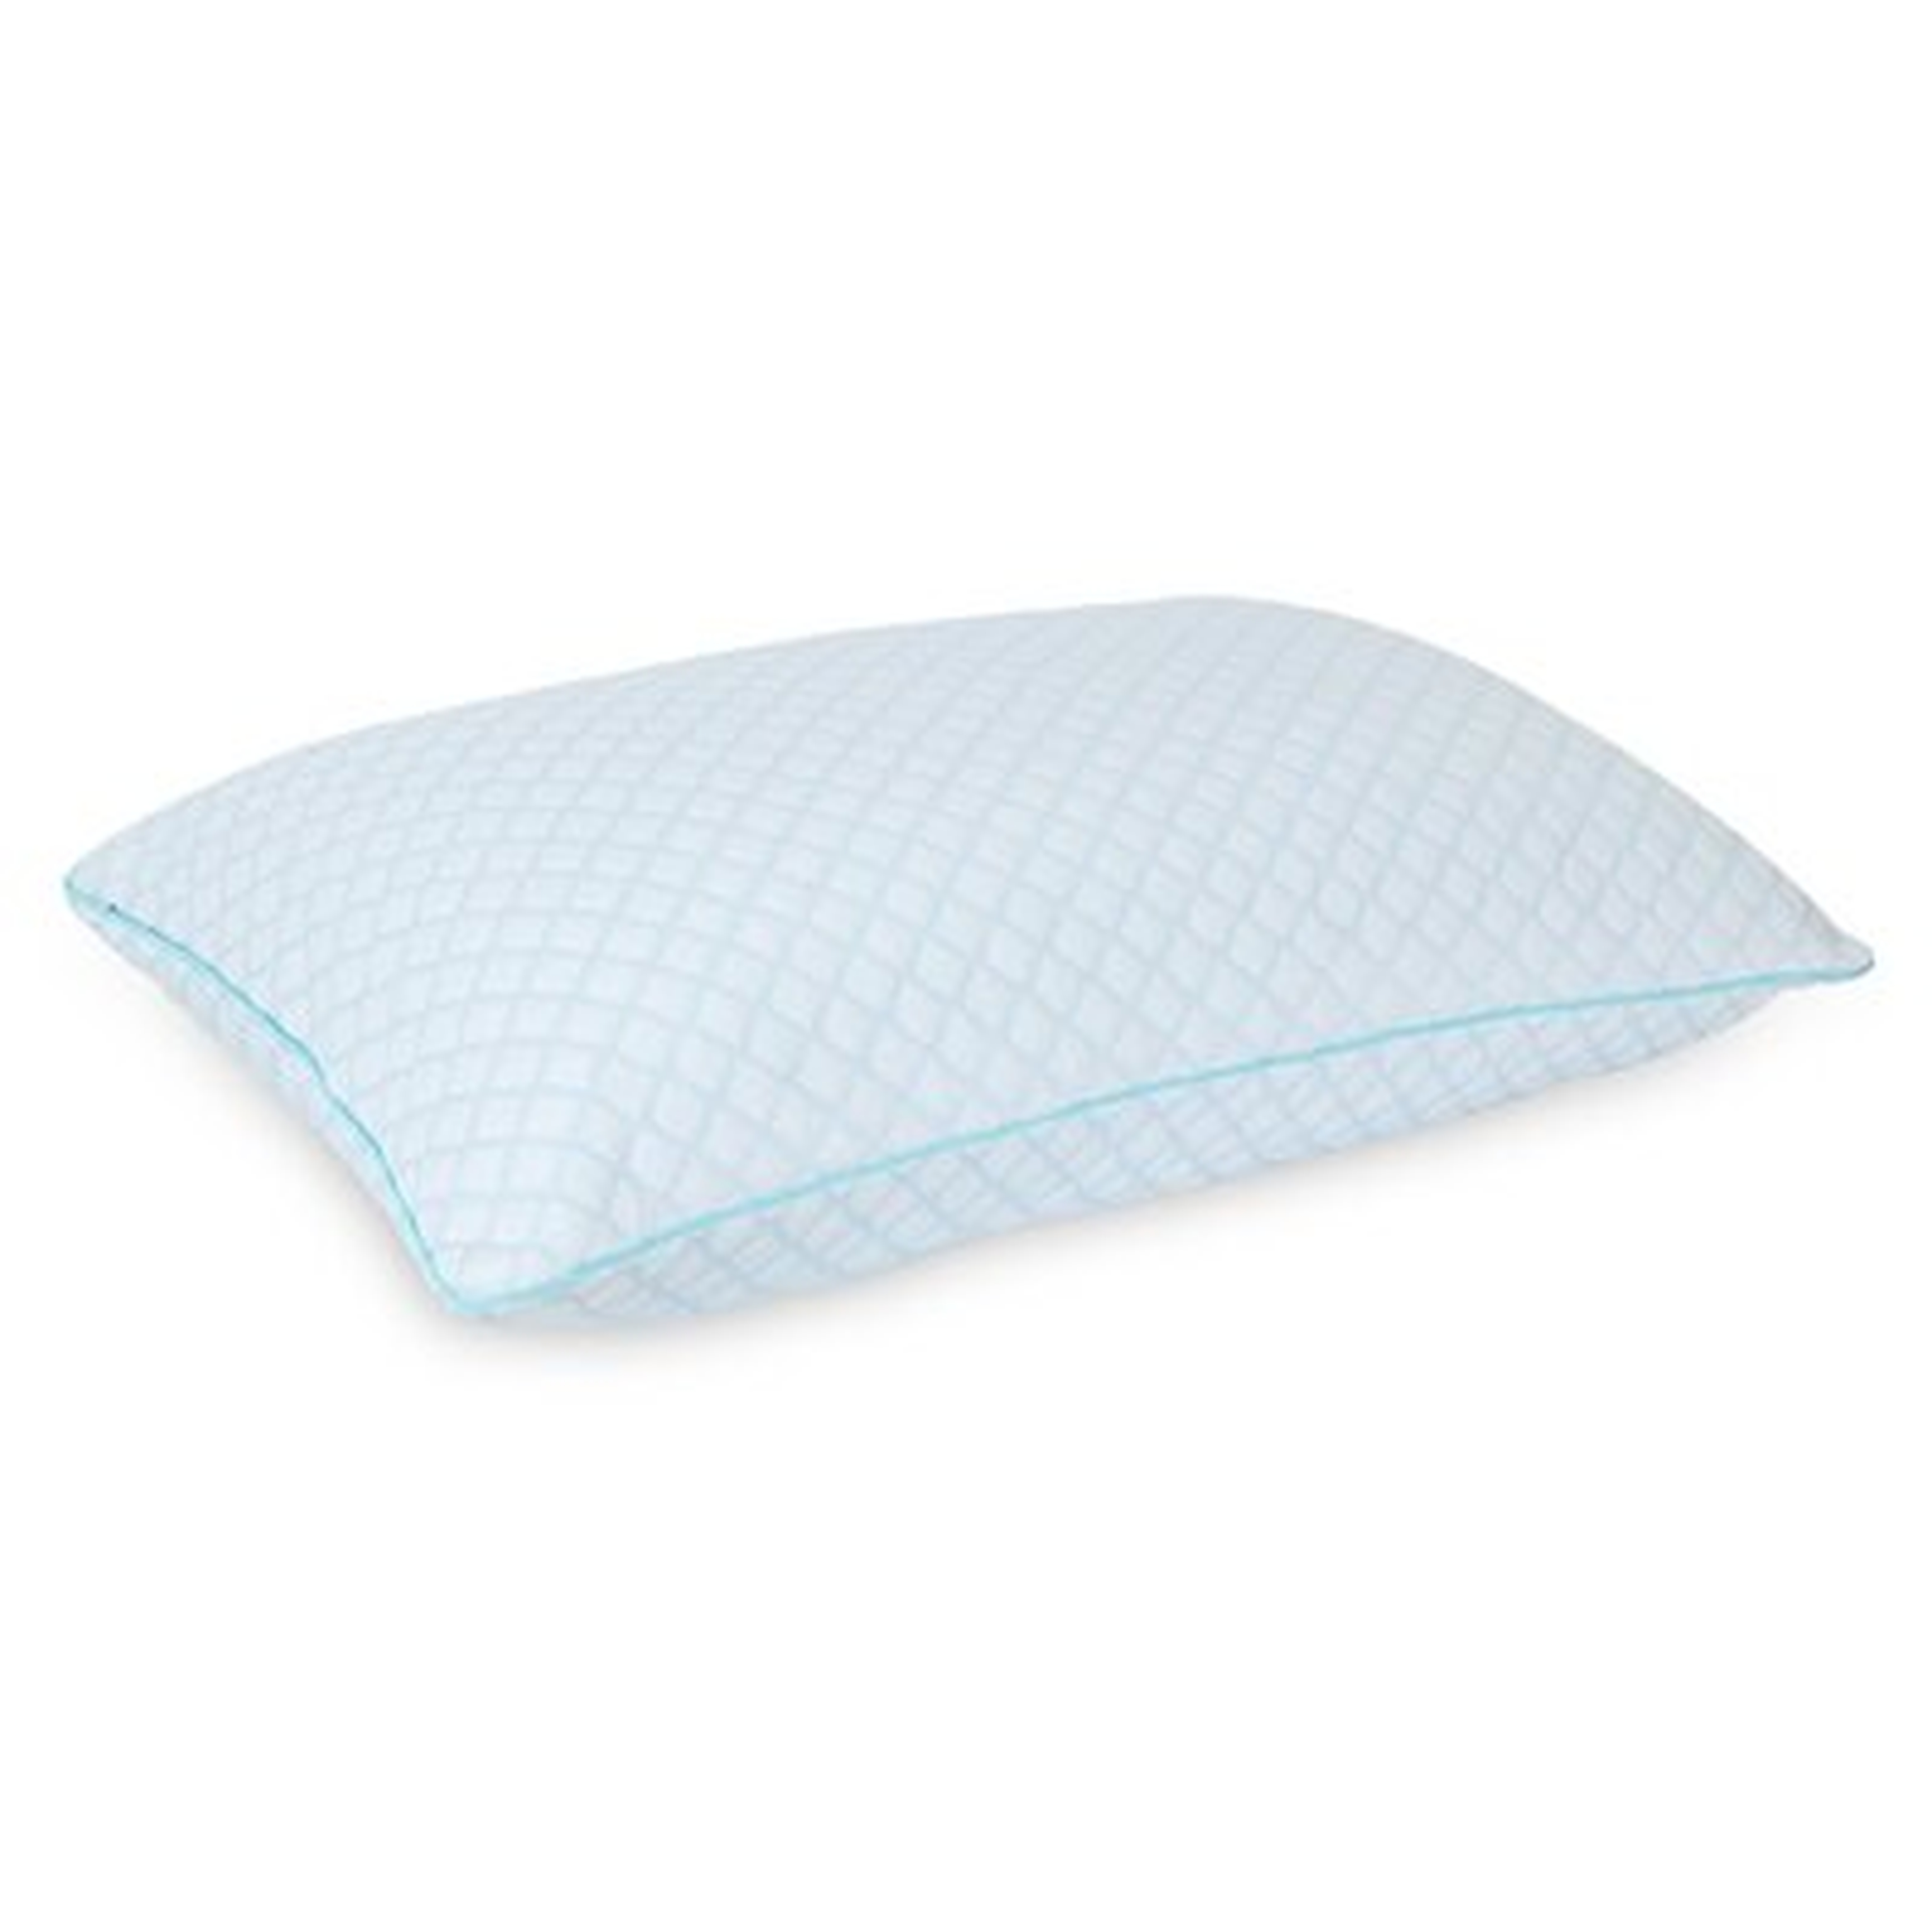 Bed Pillow - Wayfair